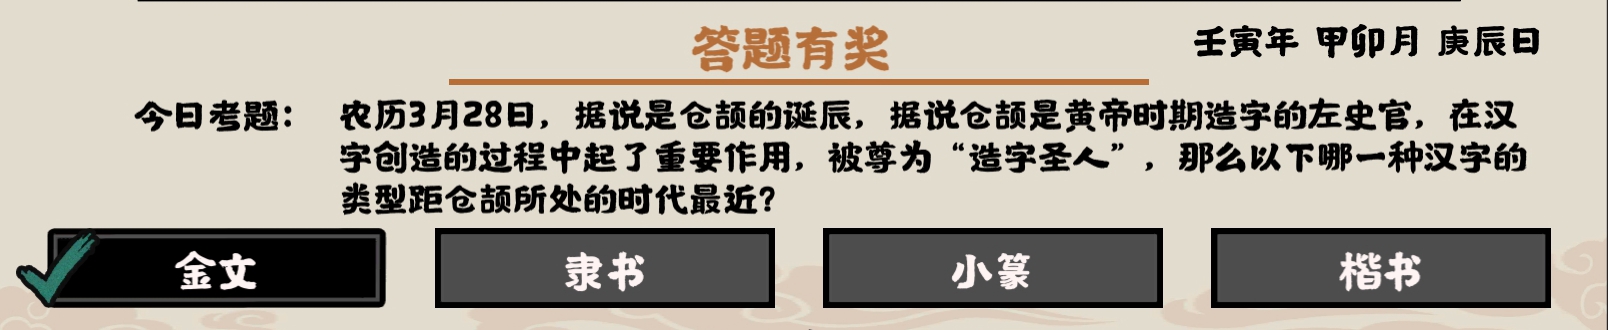 无悔华夏3月28日答题 哪一种汉字类型距离仓颉所处的时代更近